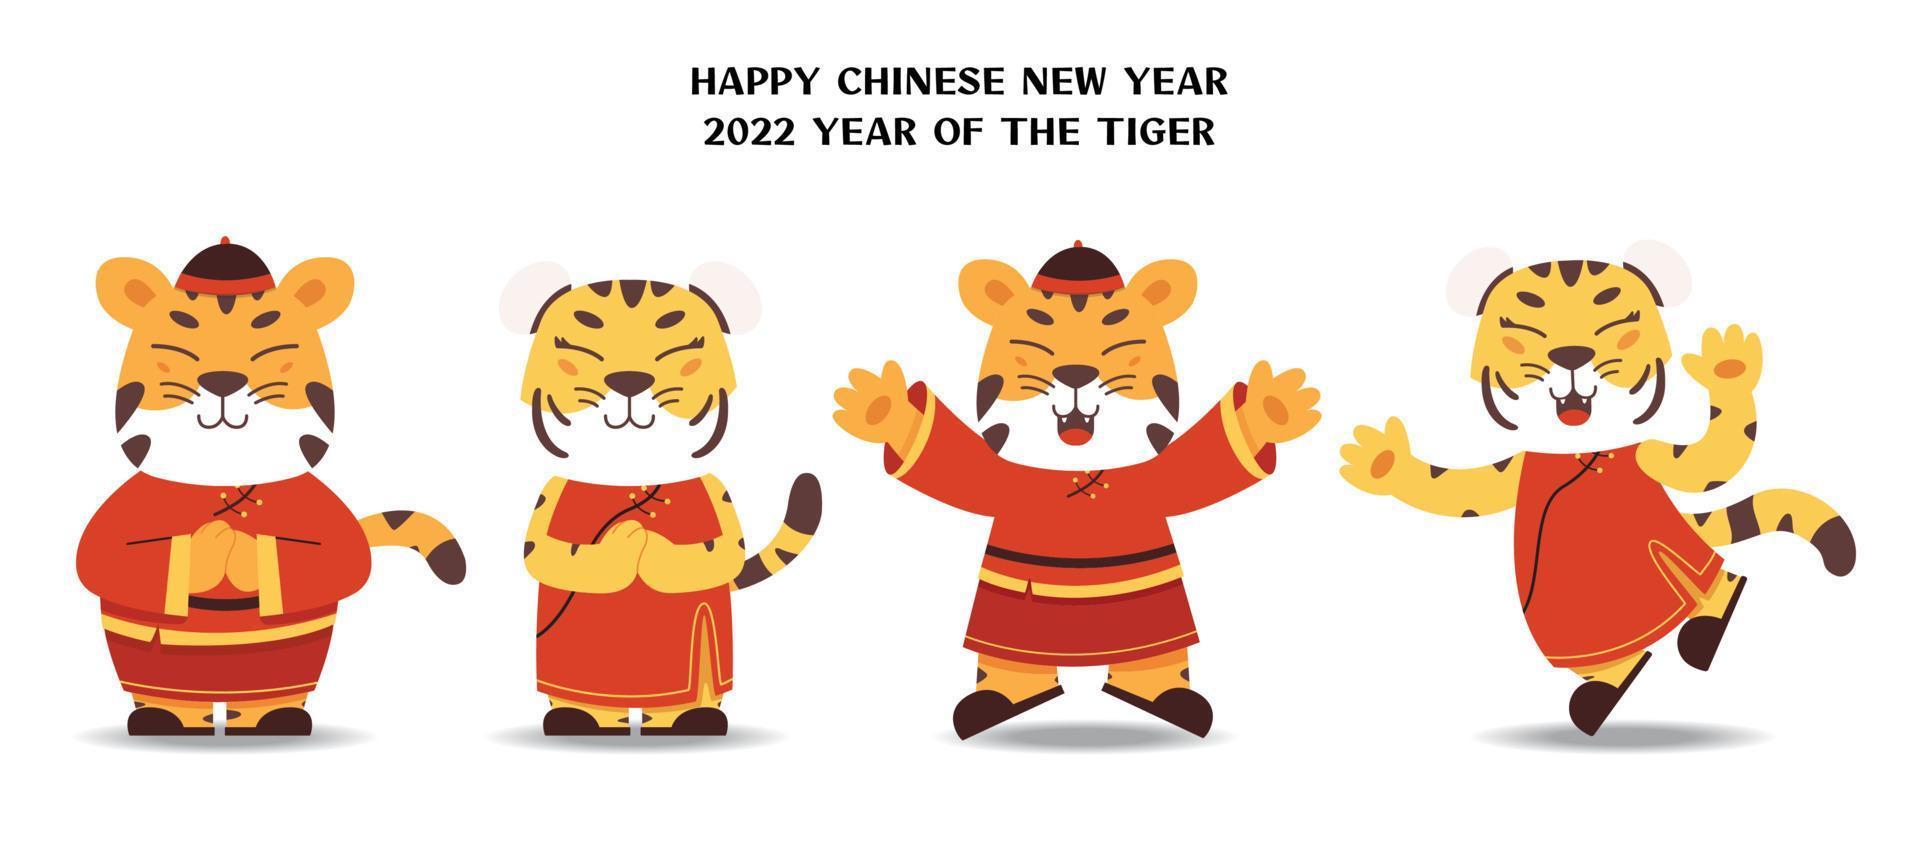 2022 año nuevo chino, año del tigre diseño de cuatro personajes con diferentes poses vector